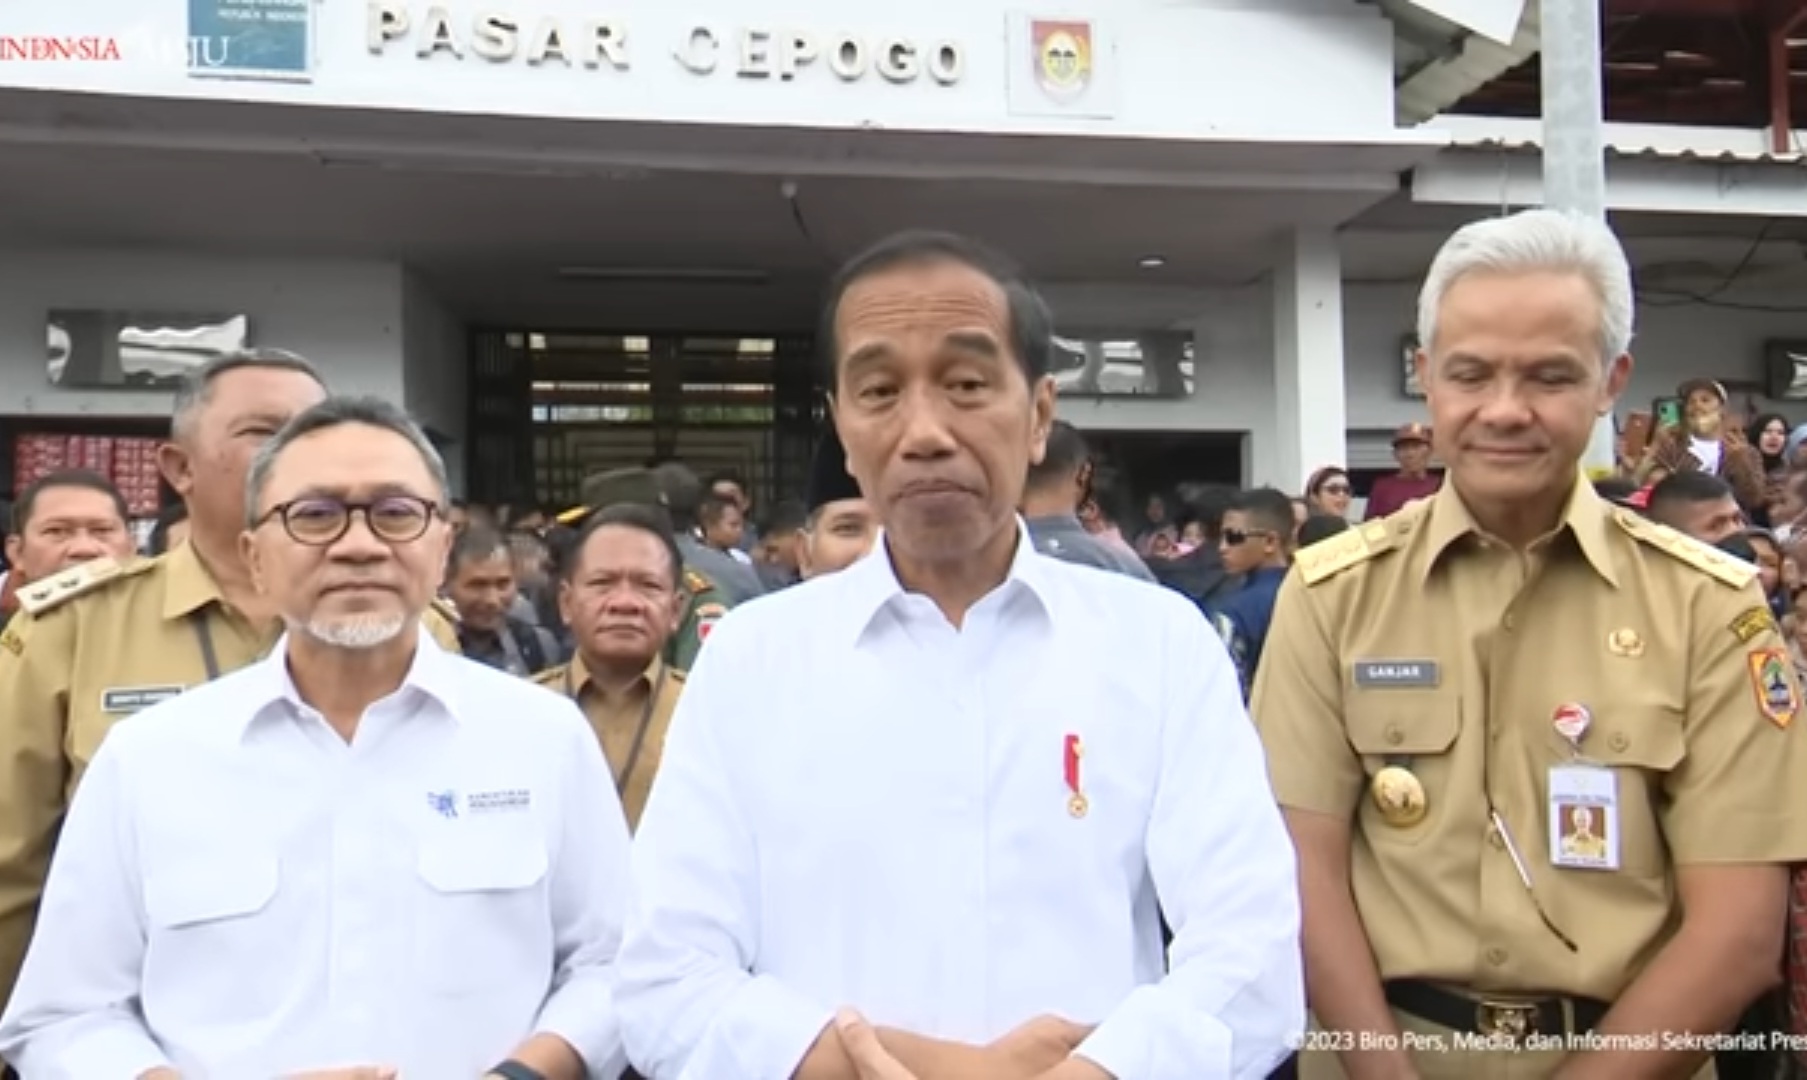 Peringatan Tegas Jokowi ke Kapolri, Menteri Sampai Kepala Daerah Sambut Lonjakan Arus Mudik